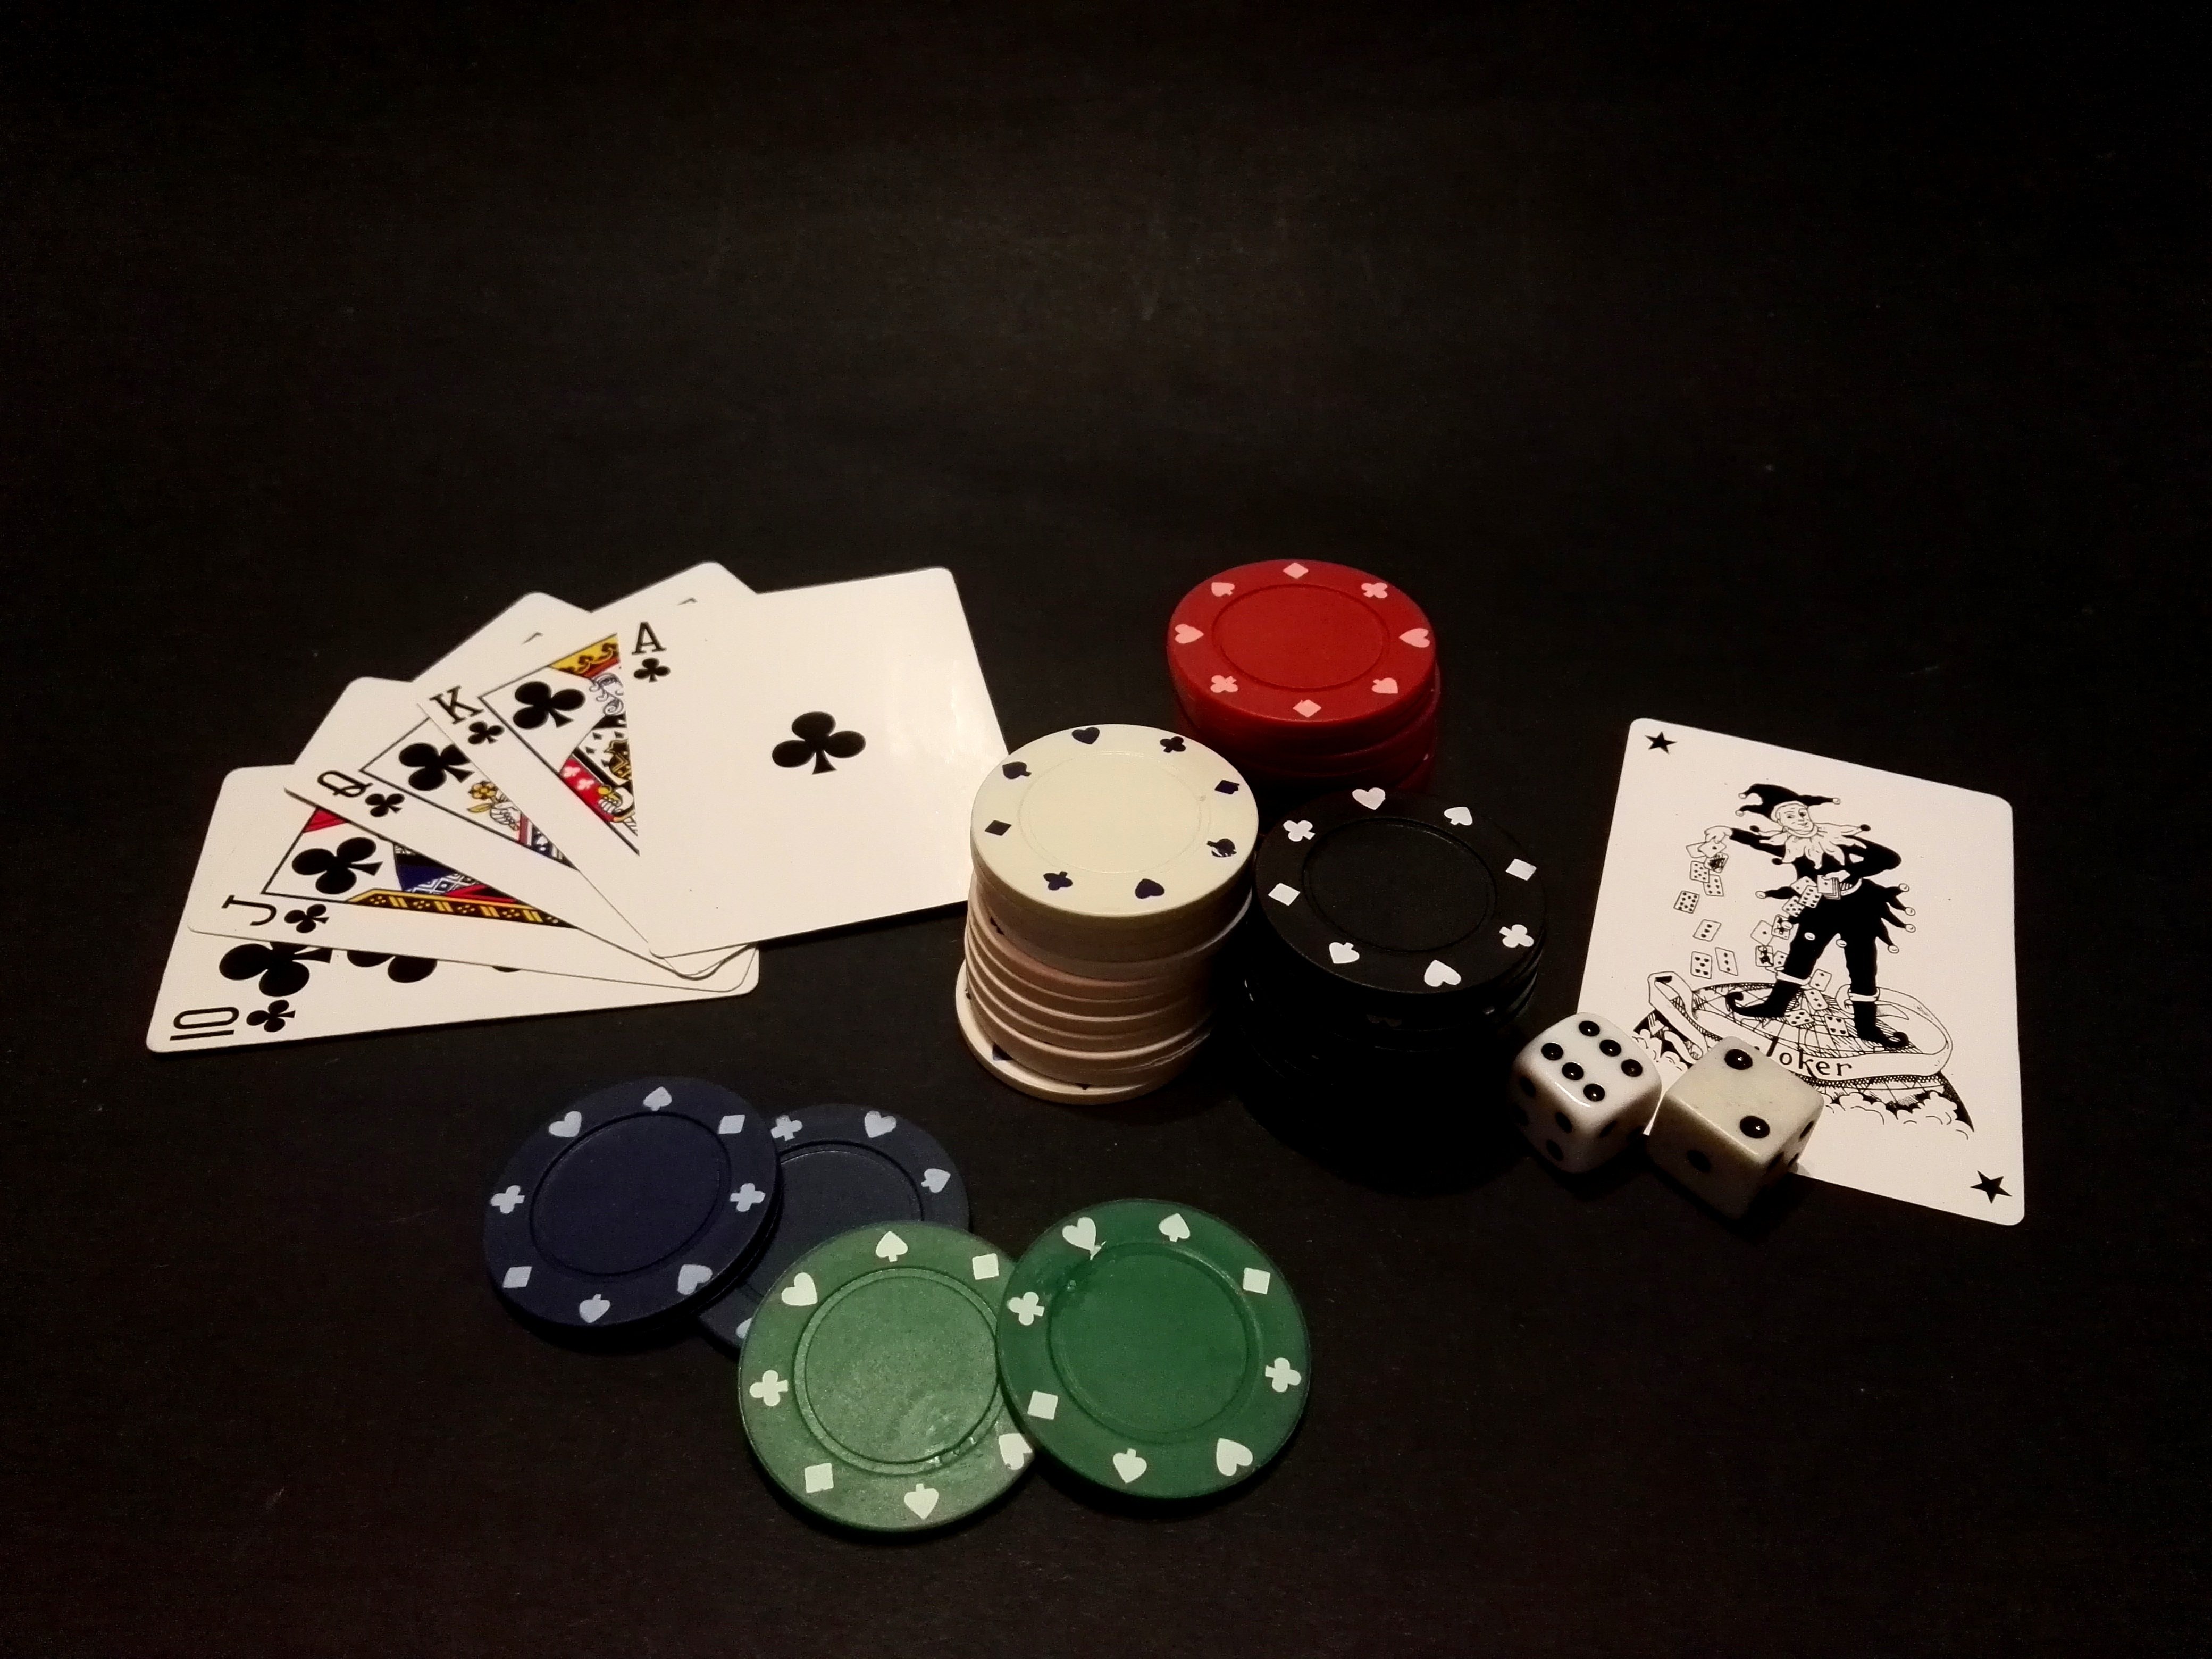 Играть в карты на деньги топ. Покер. Игральные фишки для покера. Казино карточные столы. Игра Покер карточная.